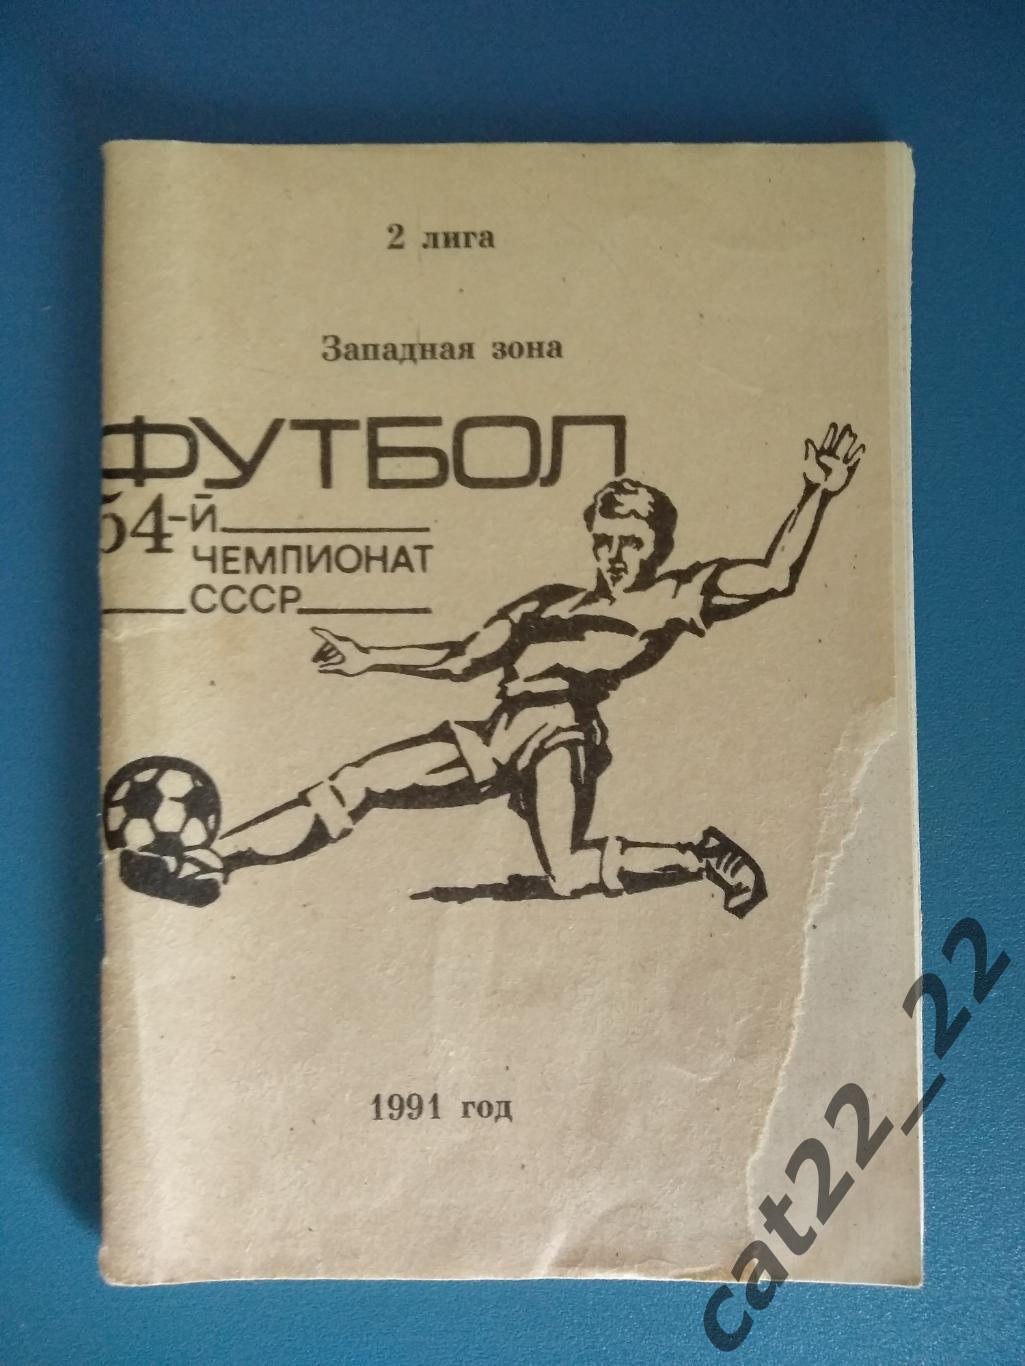 Календарь - справочник: СКА Одесса СССР/Украина 1991